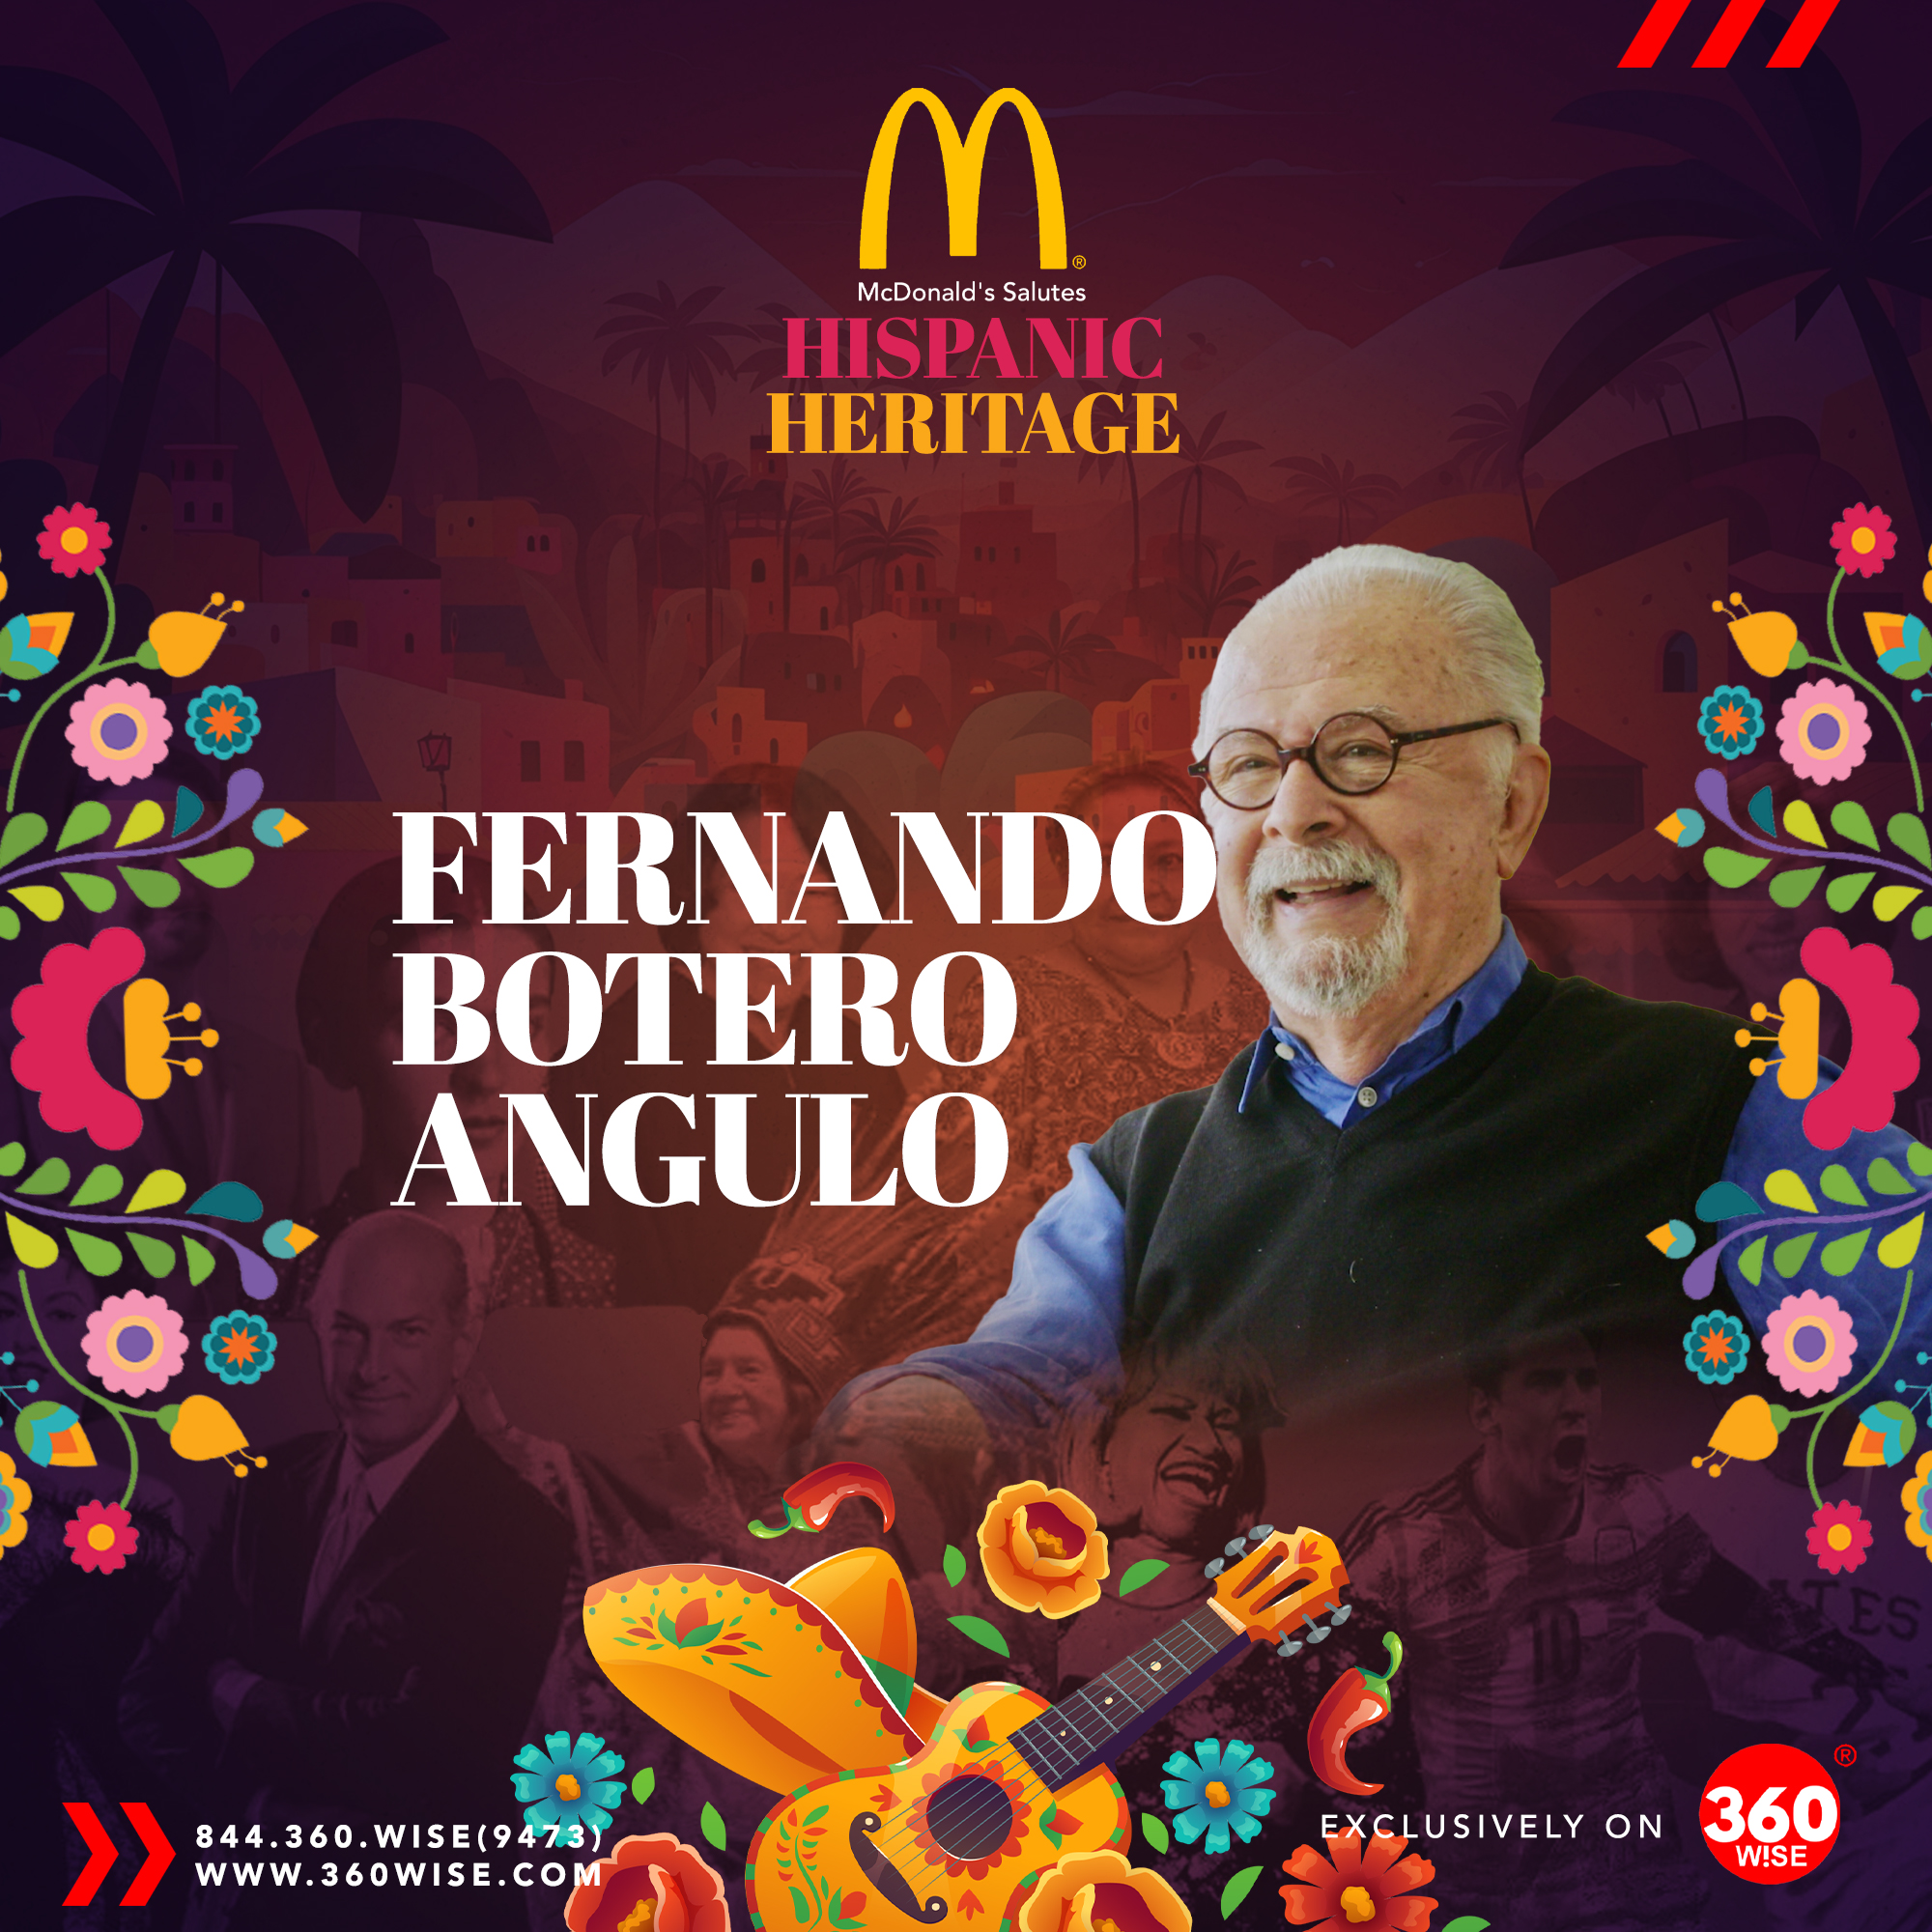 Fernando Botero Angulo